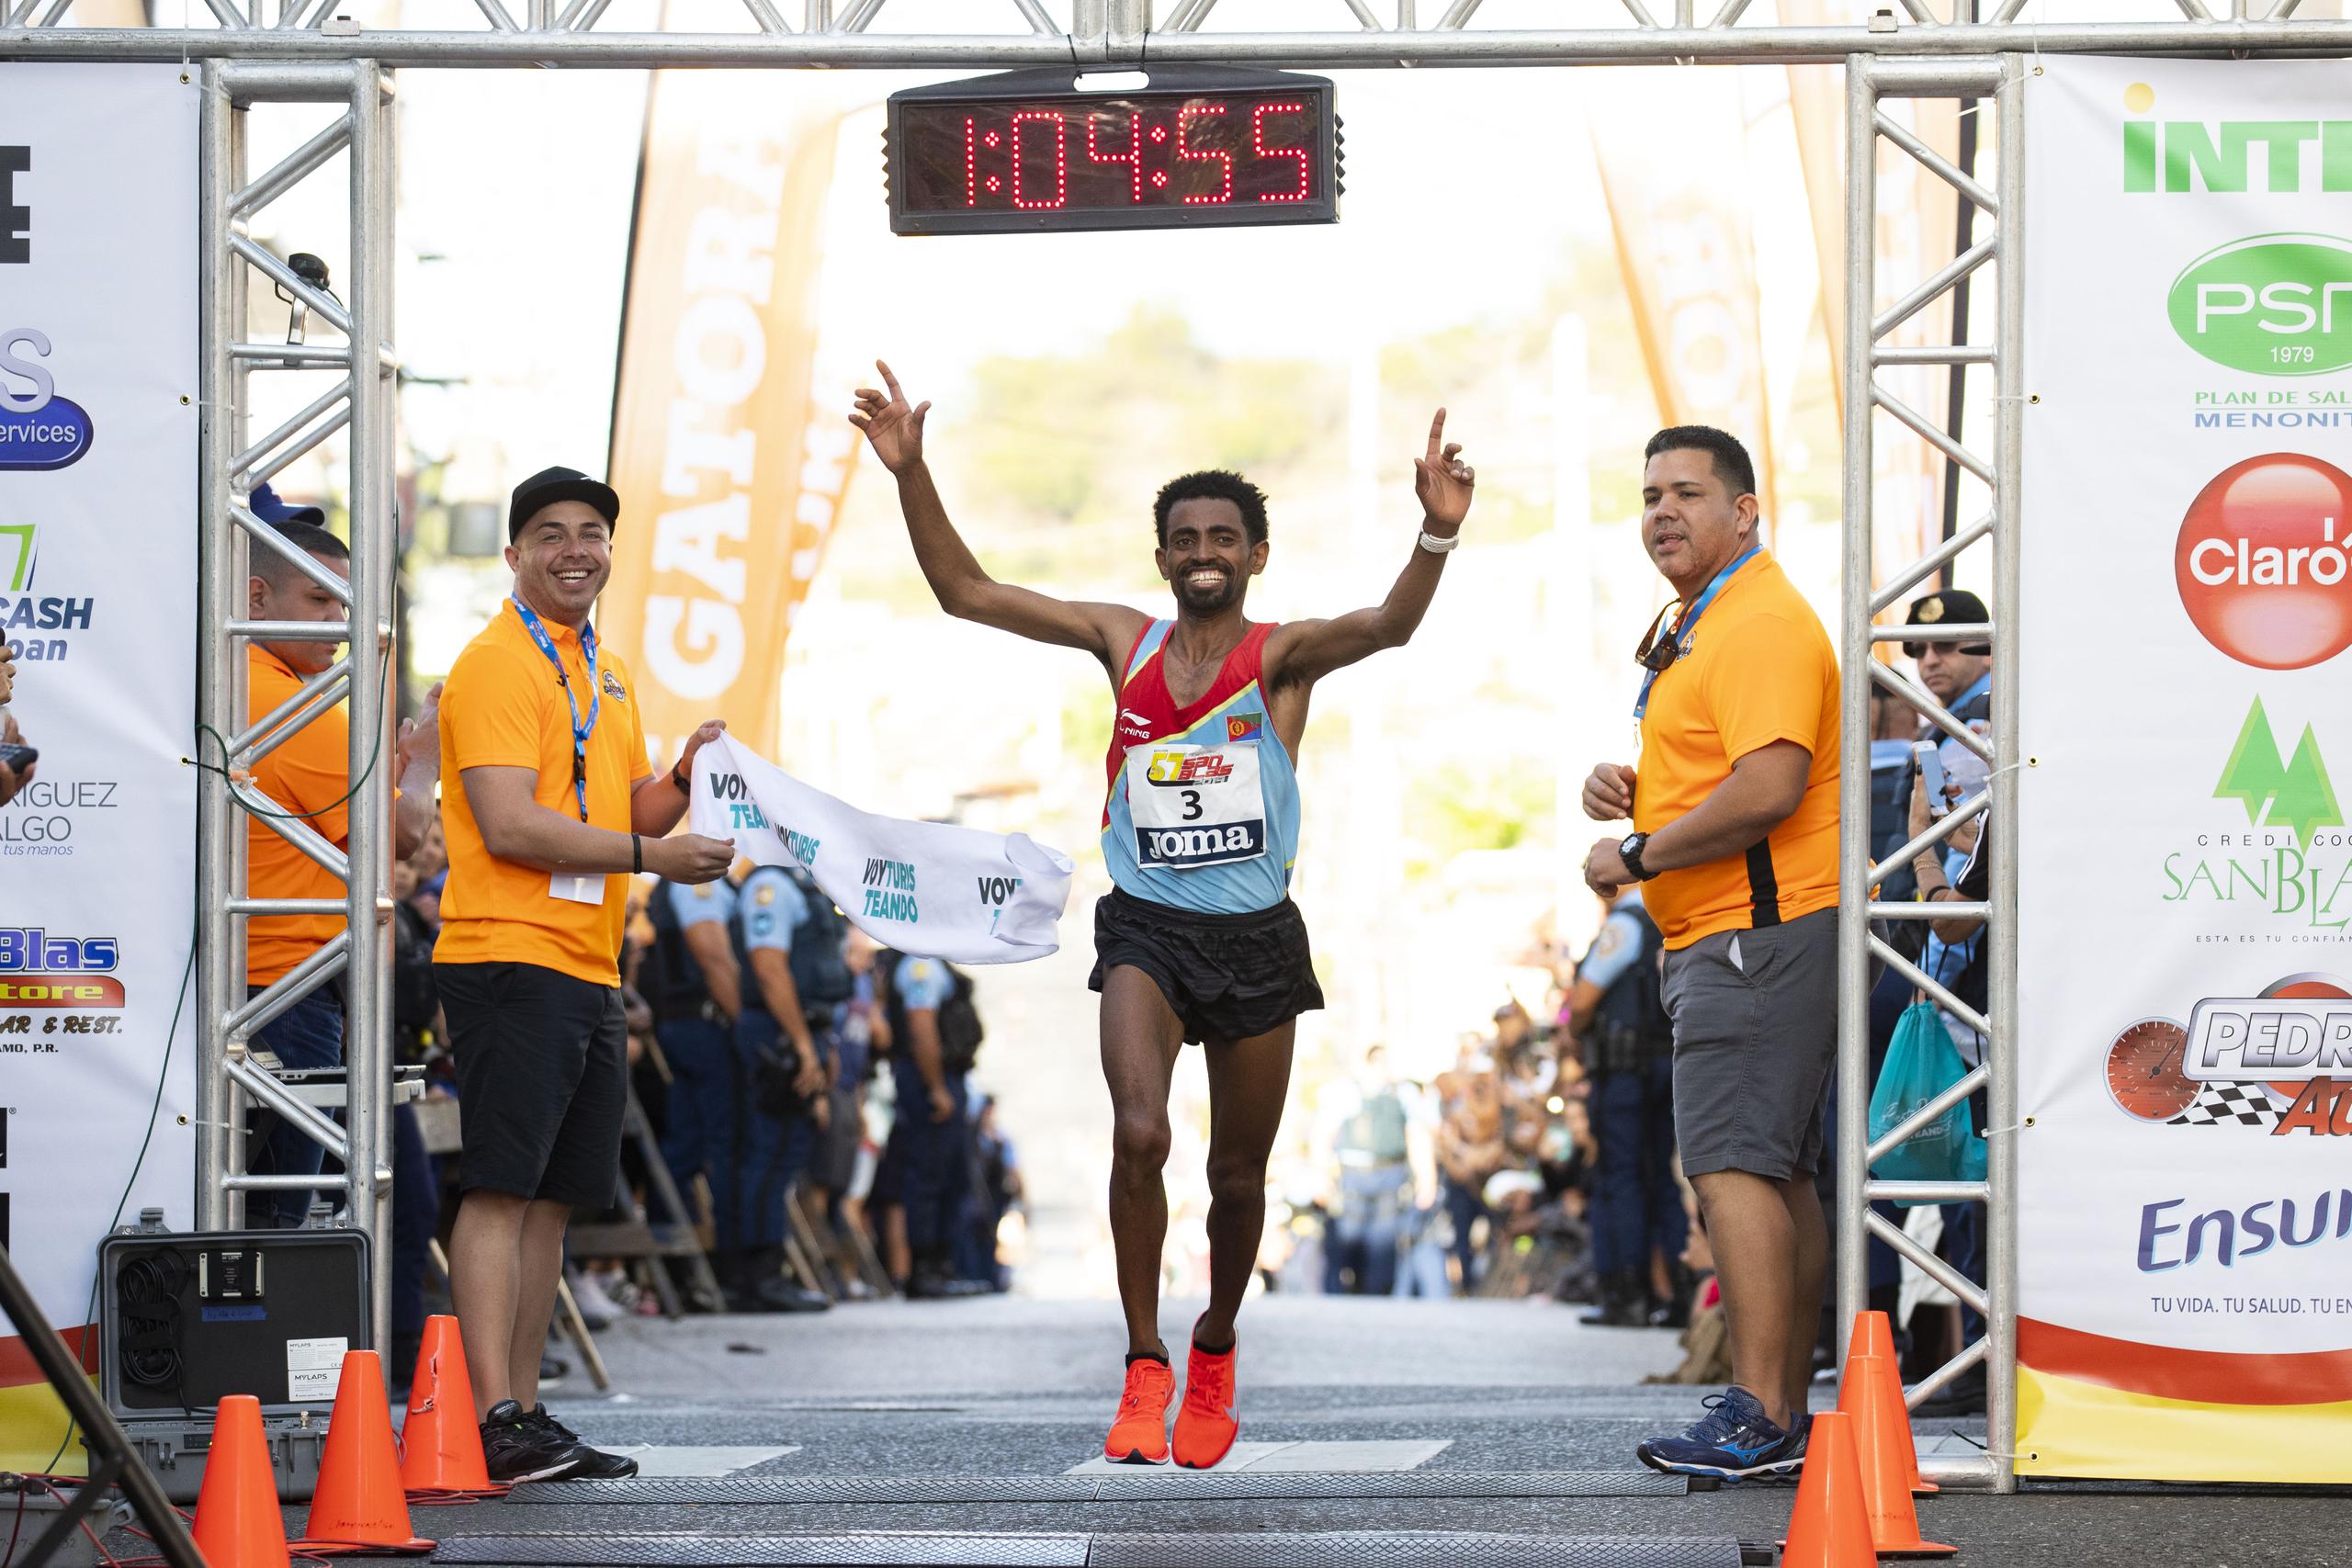 El eritreo-estadounidense Daniel Teklebraham ganó la prueba el año pasado con un tiempo de  1:04.55. El destacado atleta vuelve a Coamo a defender su campeonato.